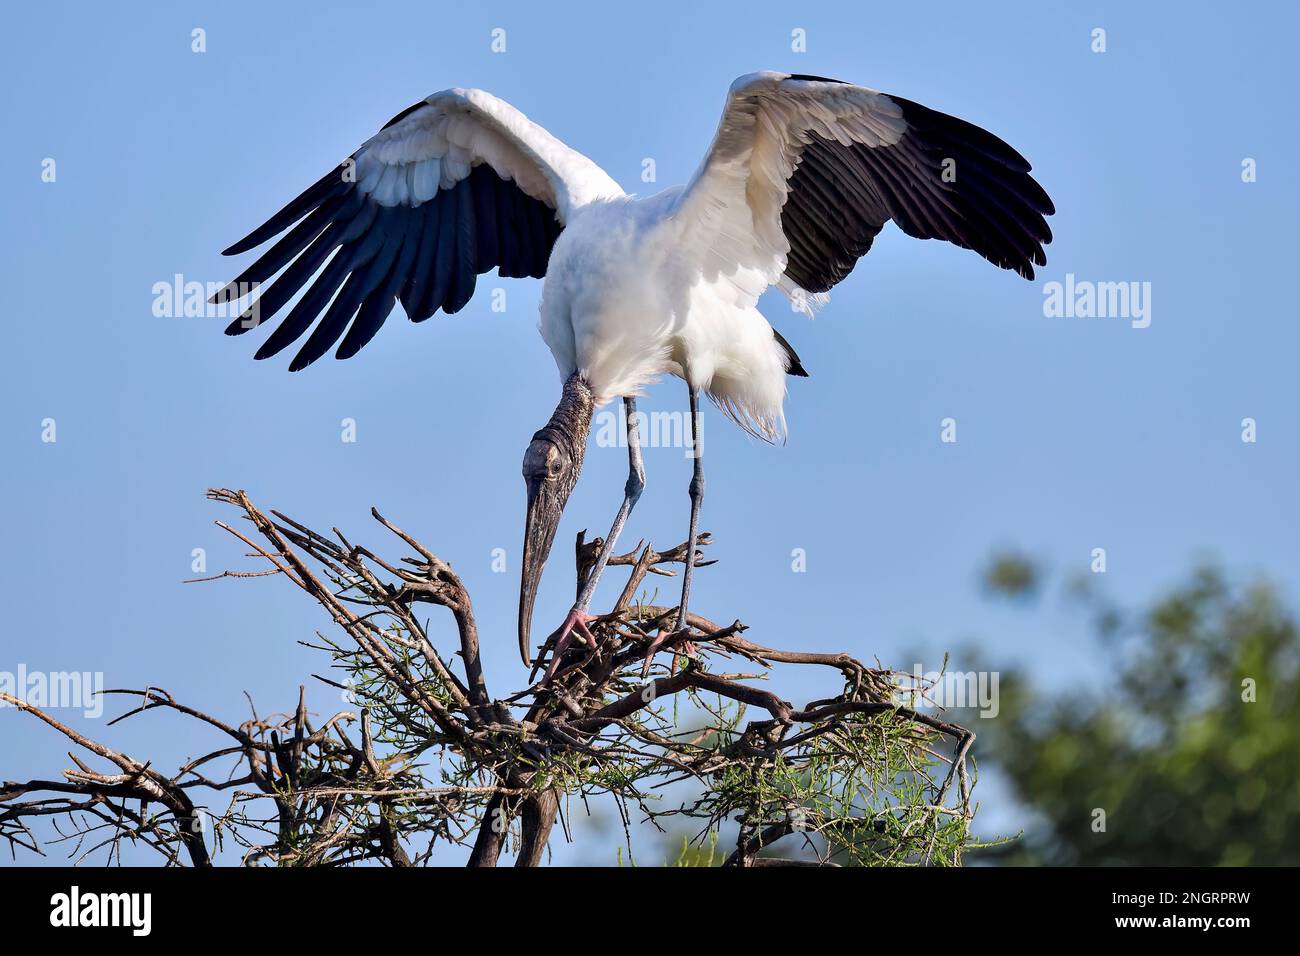 Pour un gros oiseau comme le bois Stork, il n'est pas facile de trouver l'équilibre debout sur la branche flexible. Banque D'Images